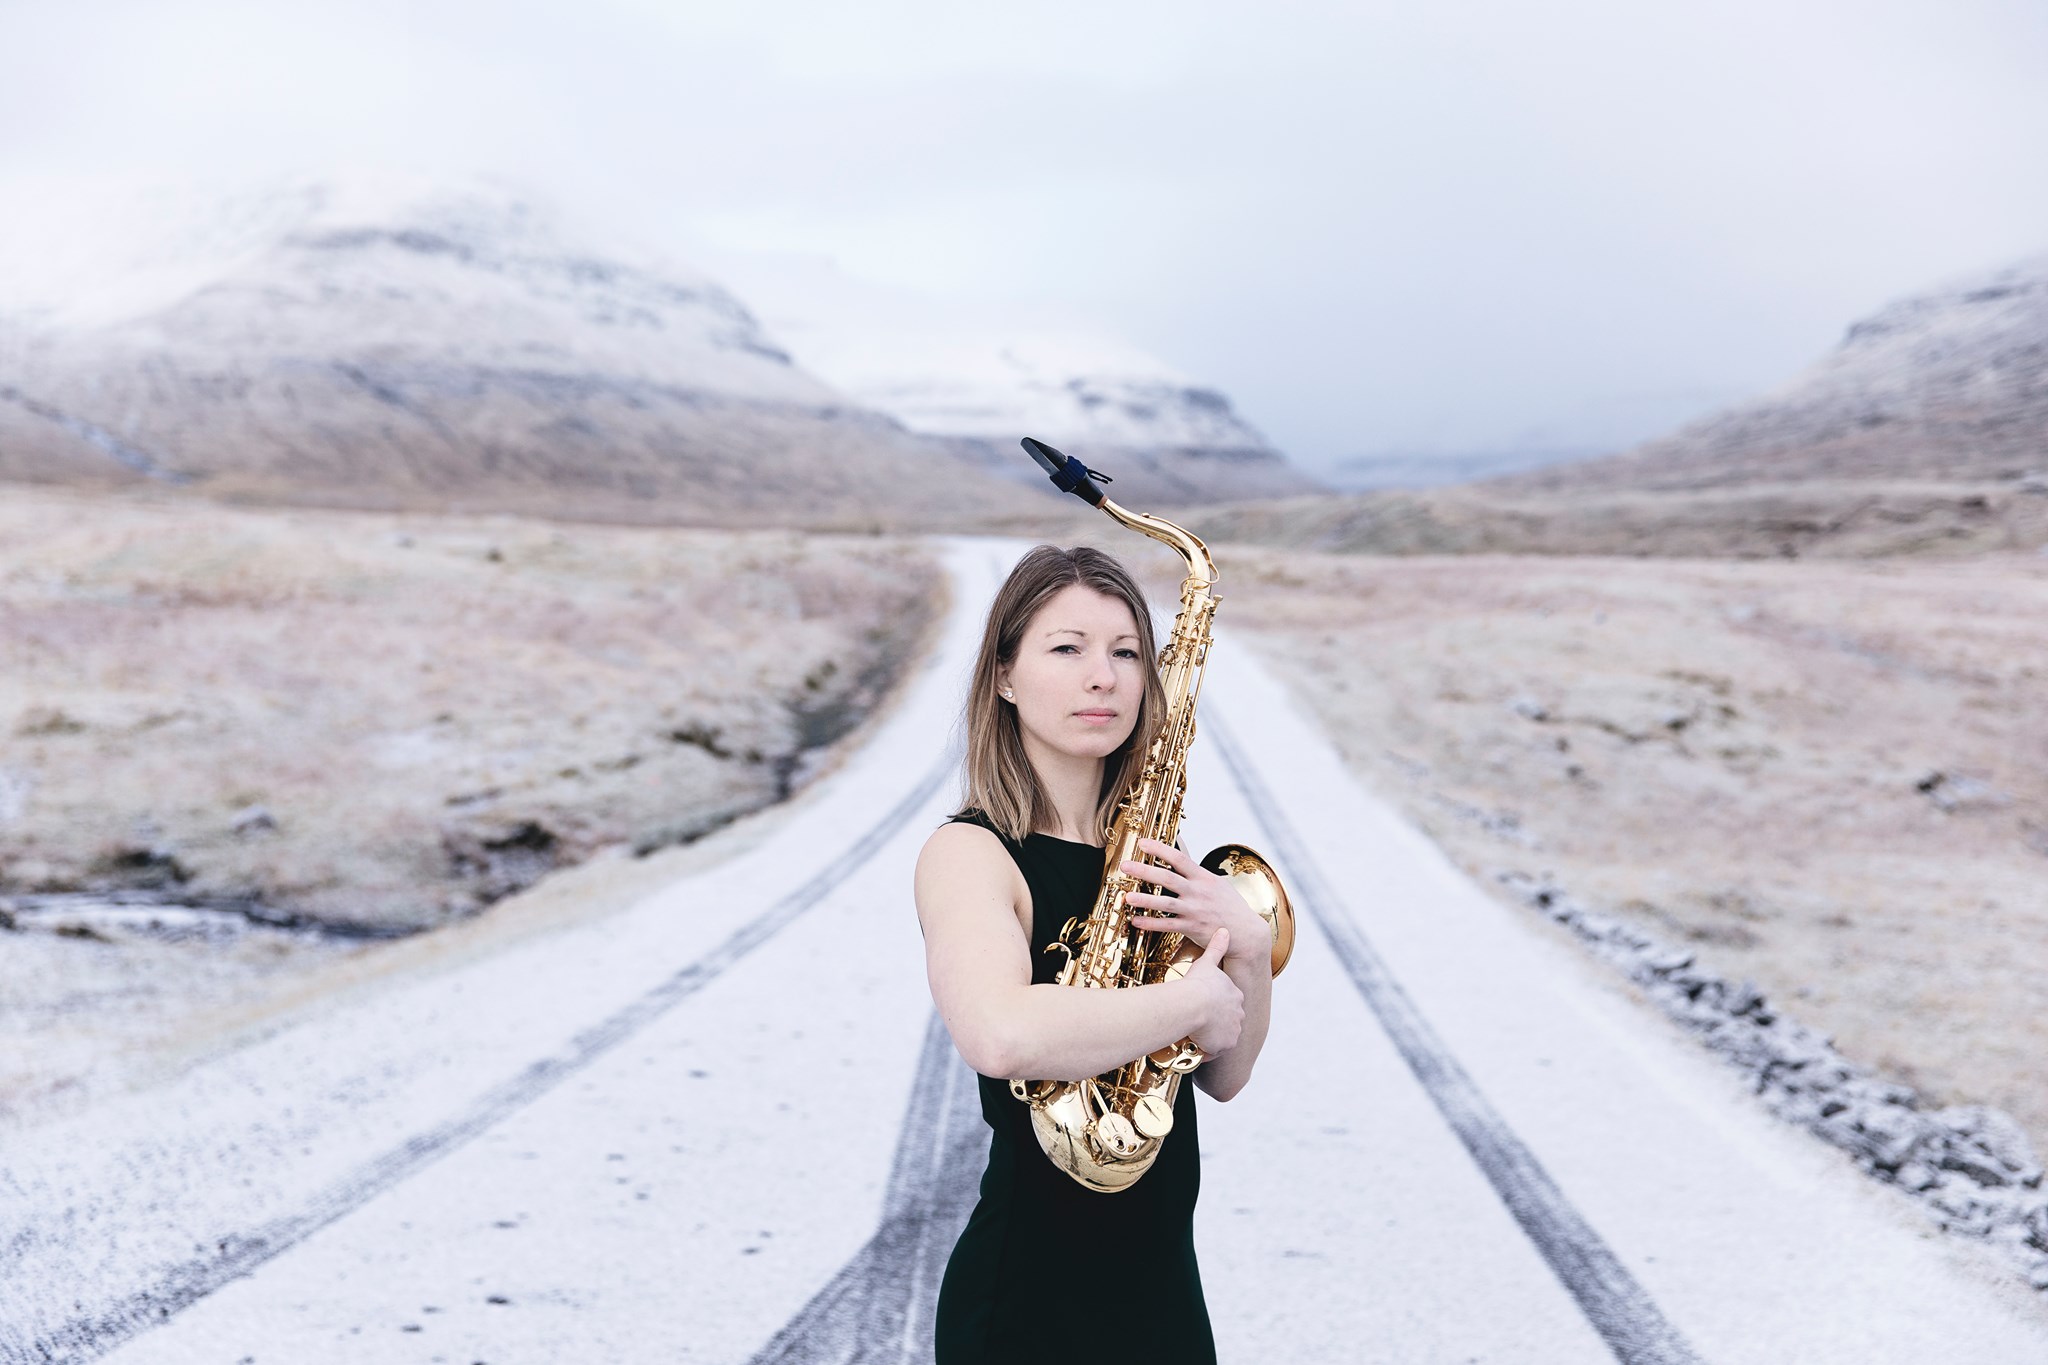 En kvinde, der holder en saxofon på en snedækket vej, viser sine evner som en talentfuld musikkomponist.